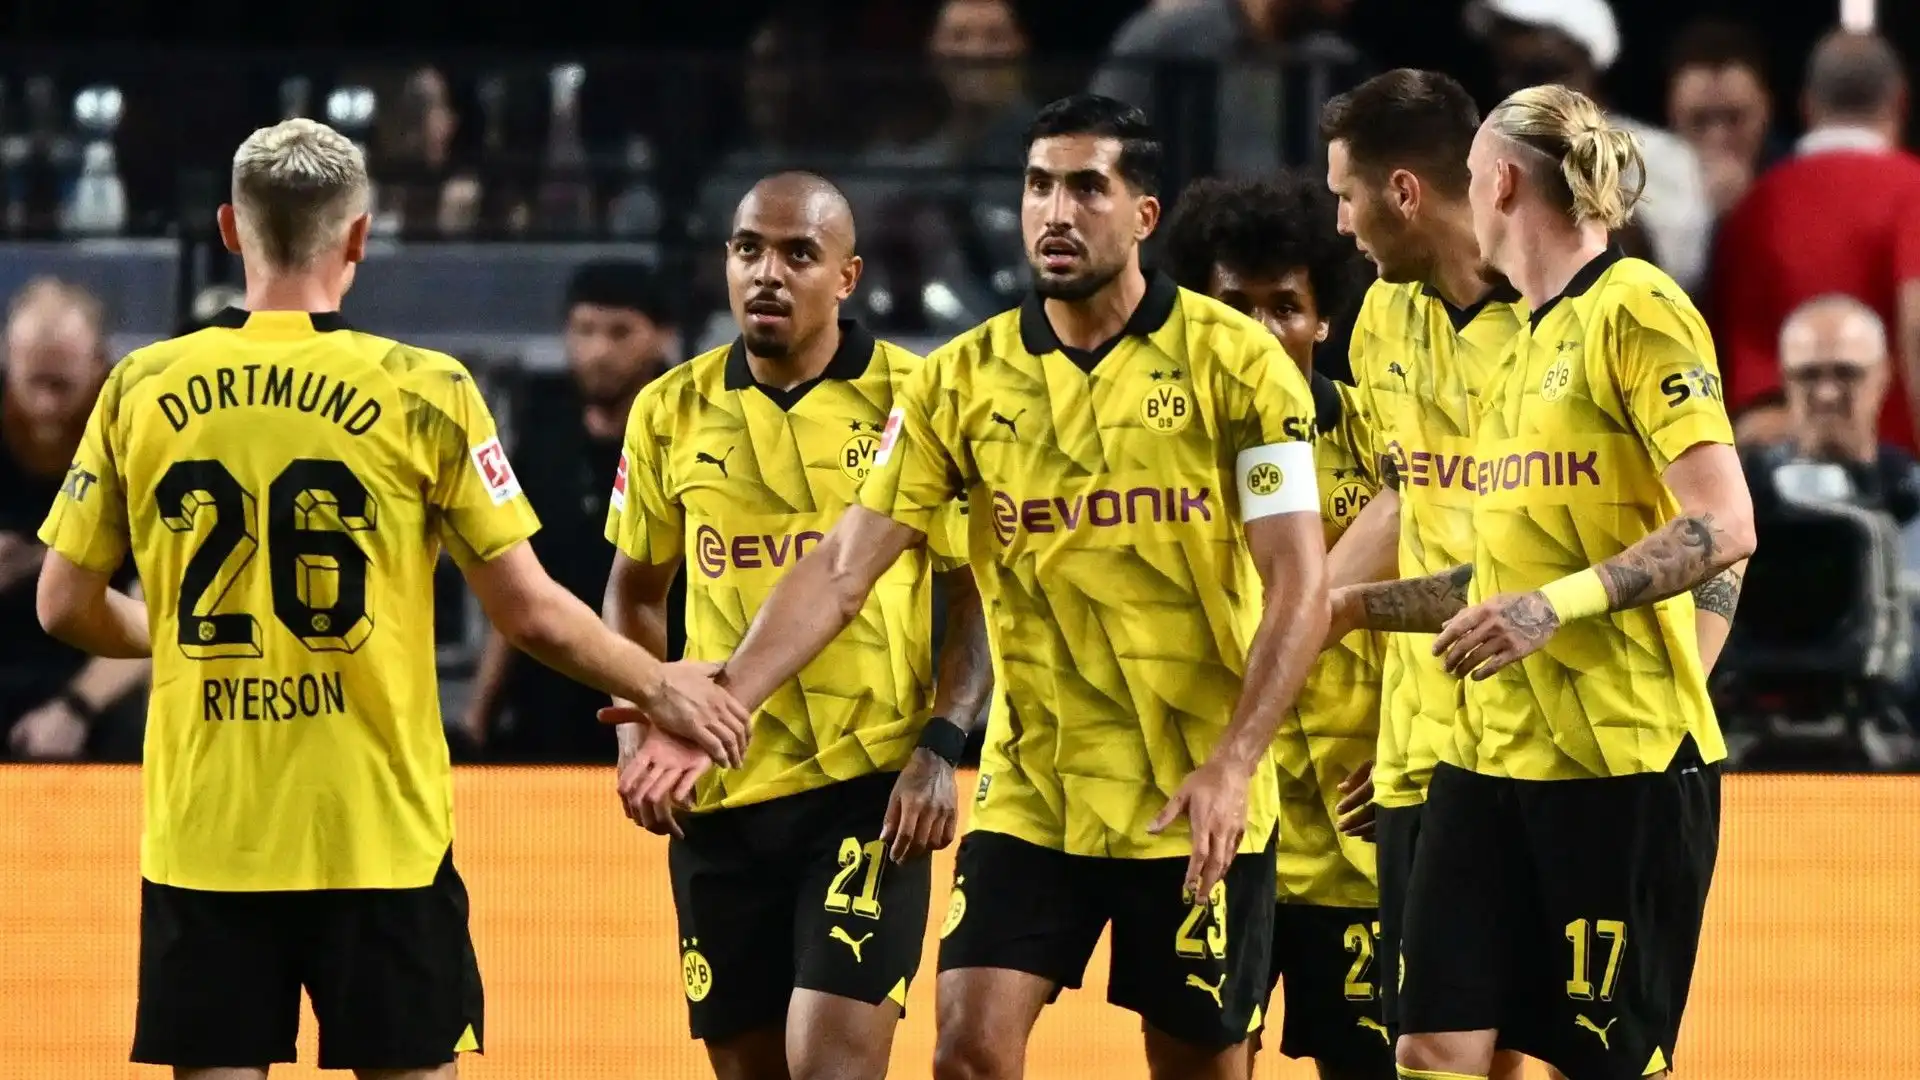 Addio certo al Borussia Dortmund: immagini